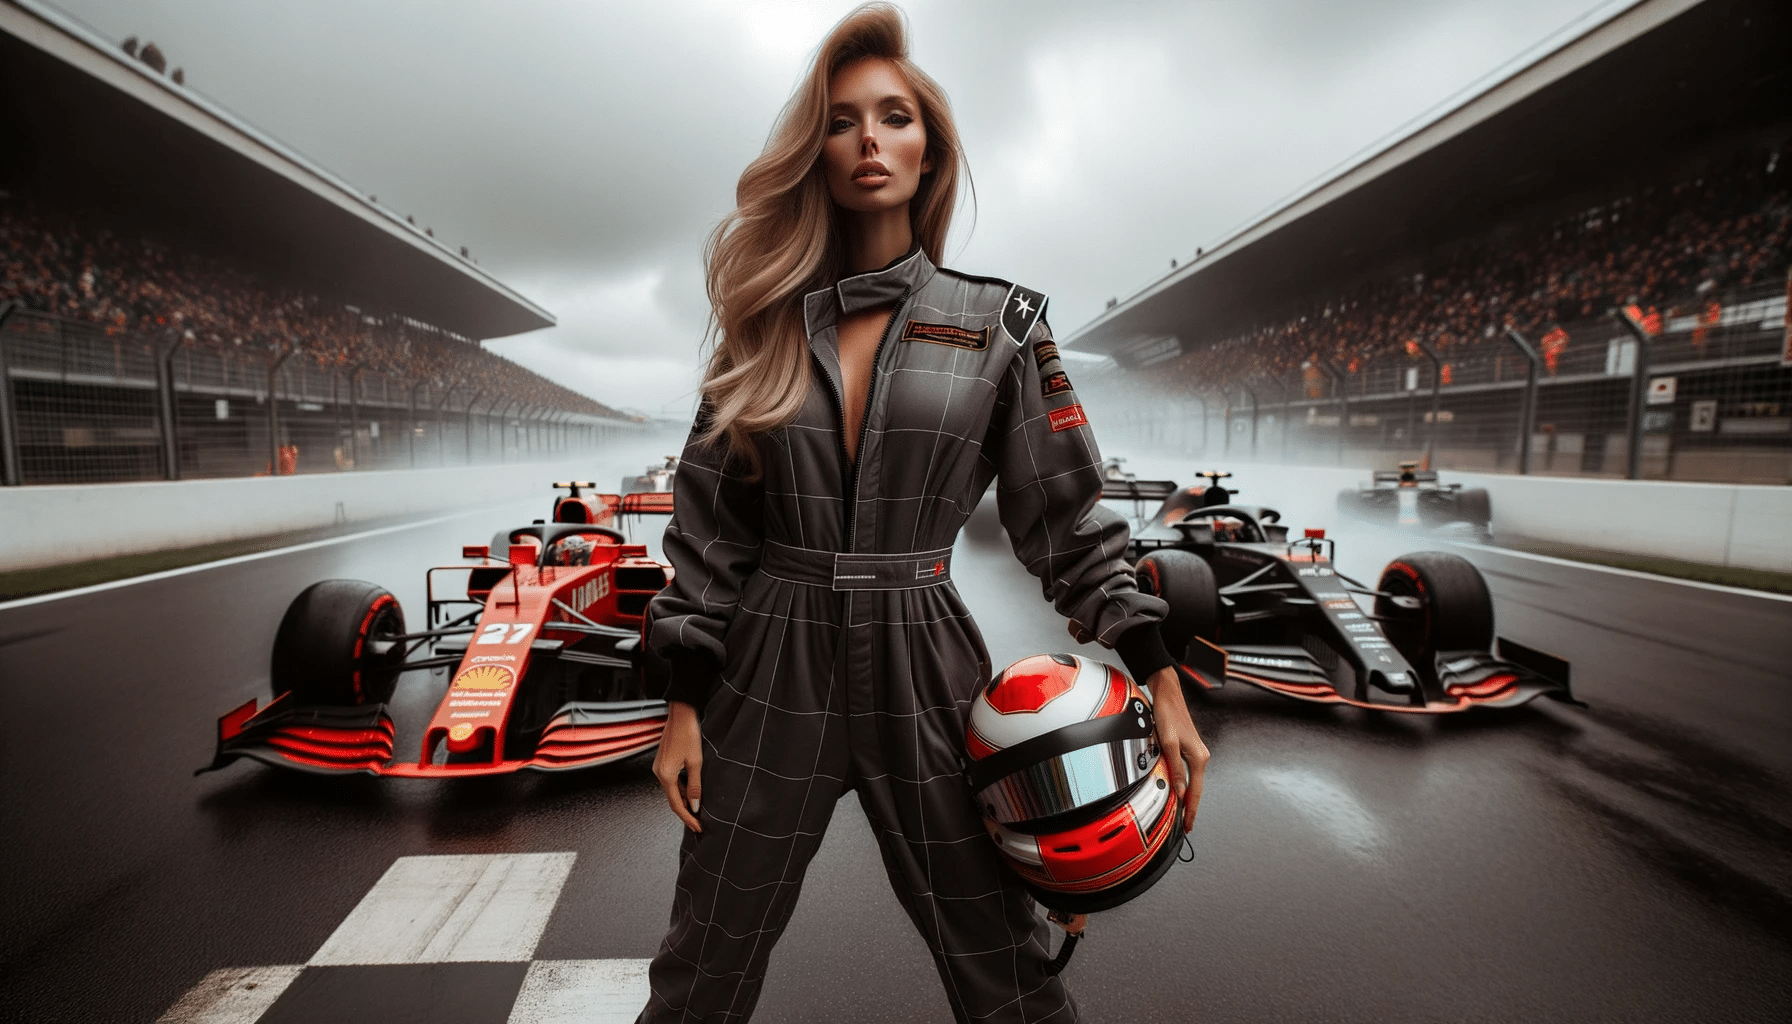 Partenariats F1 pour faire progresser les femmes dans le sport auto